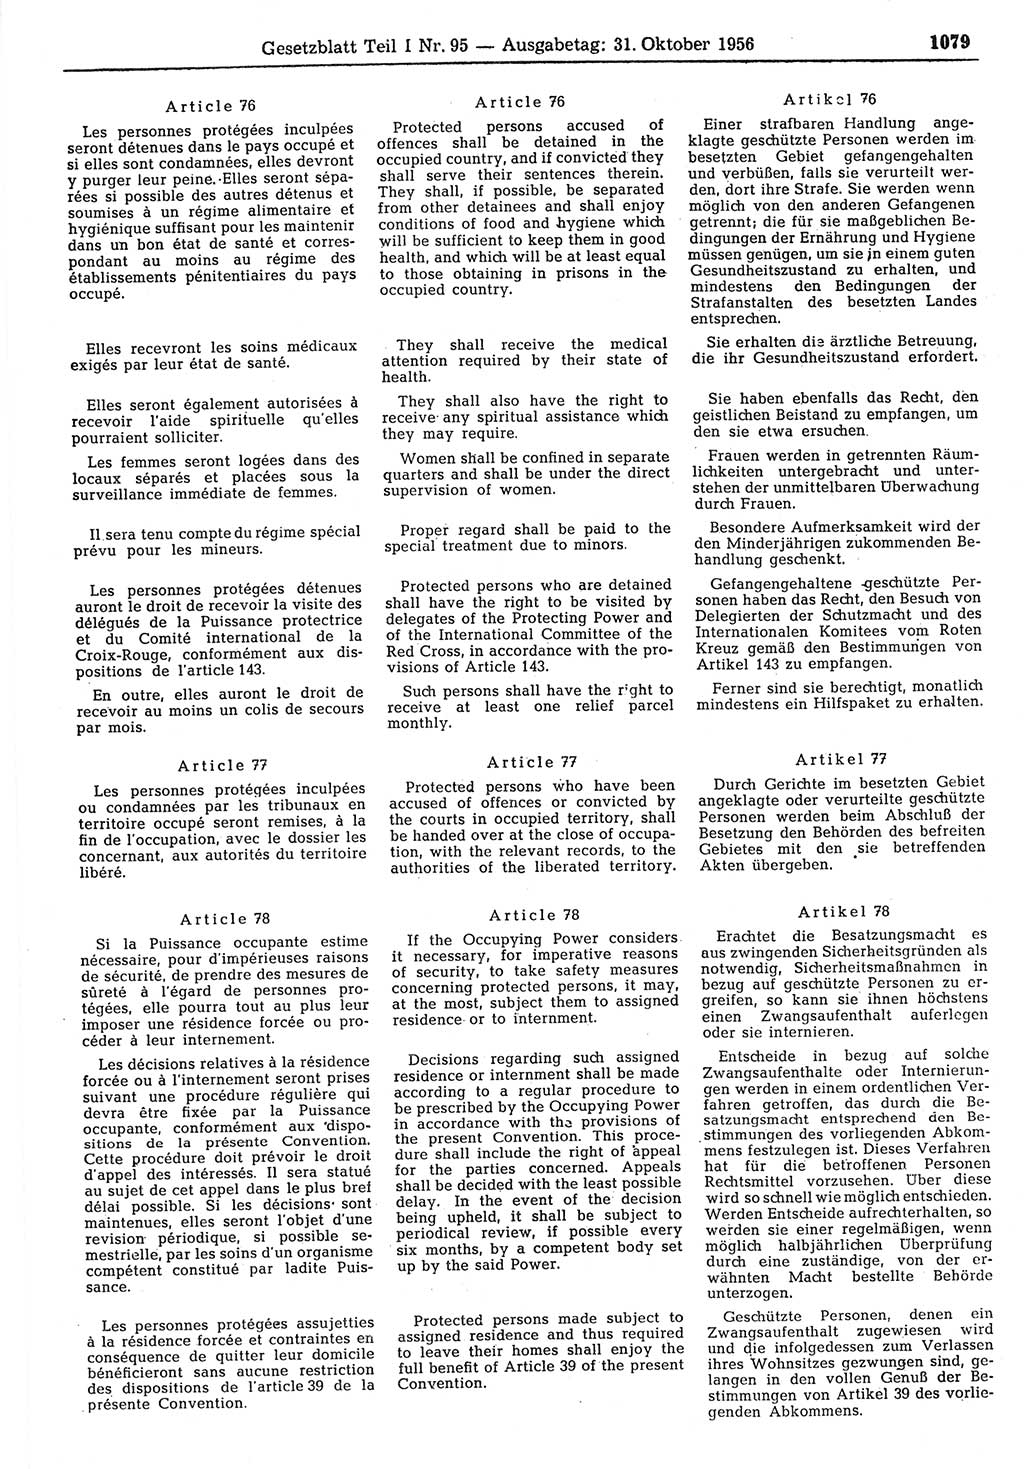 Gesetzblatt (GBl.) der Deutschen Demokratischen Republik (DDR) Teil Ⅰ 1956, Seite 1079 (GBl. DDR Ⅰ 1956, S. 1079)